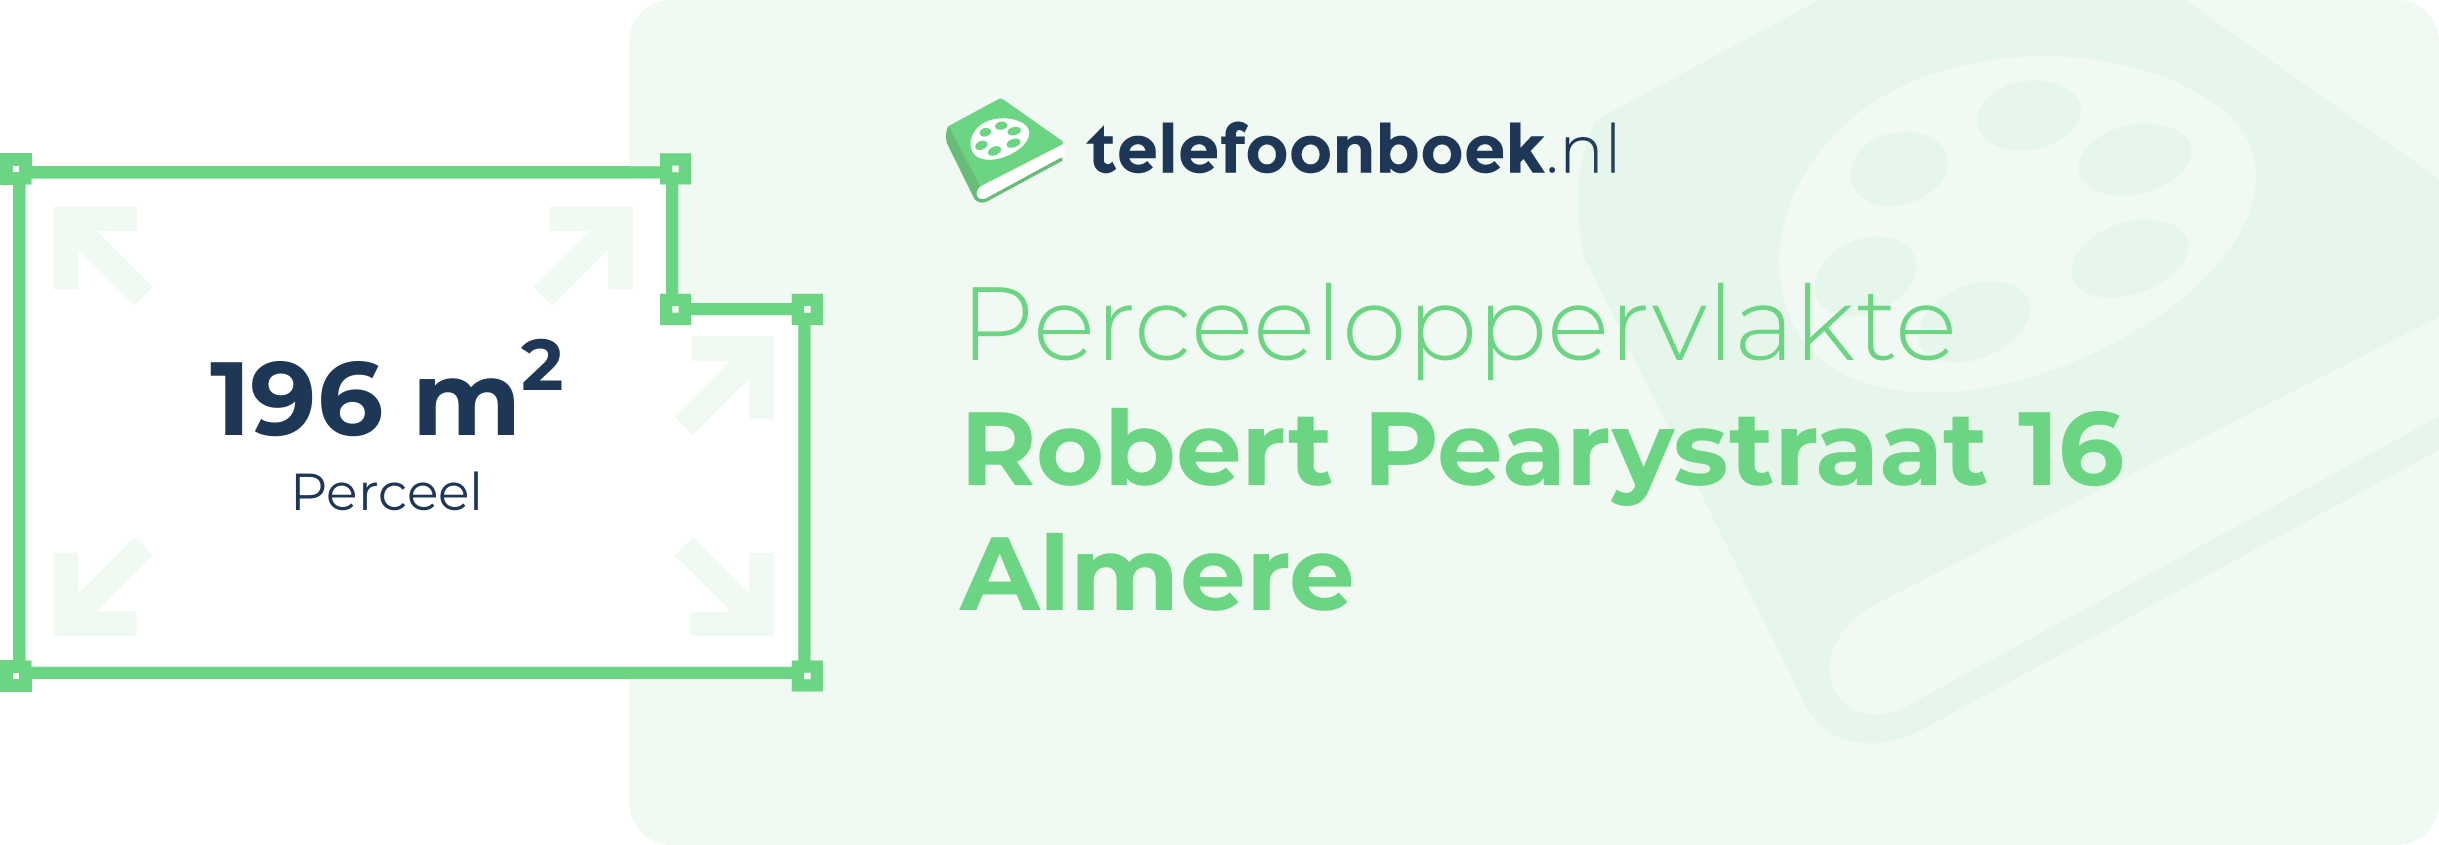 Perceeloppervlakte Robert Pearystraat 16 Almere